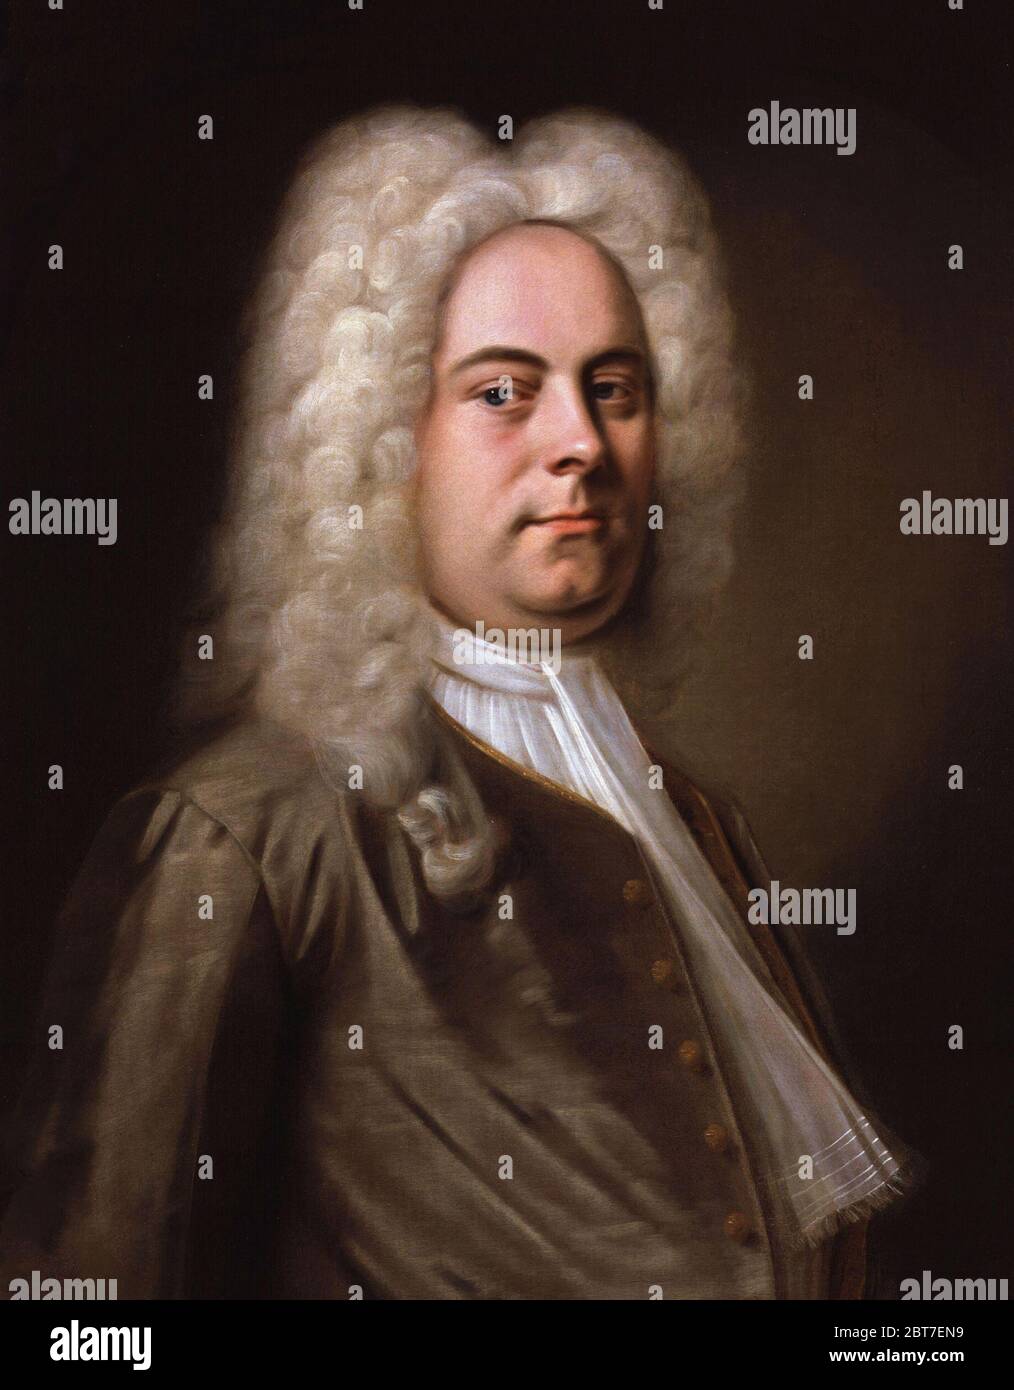 George Frideric (ou Frederick) Handel (1685-1759), portrait attribué à Balthasar Denner, huile sur toile, c. 1726-28. Banque D'Images